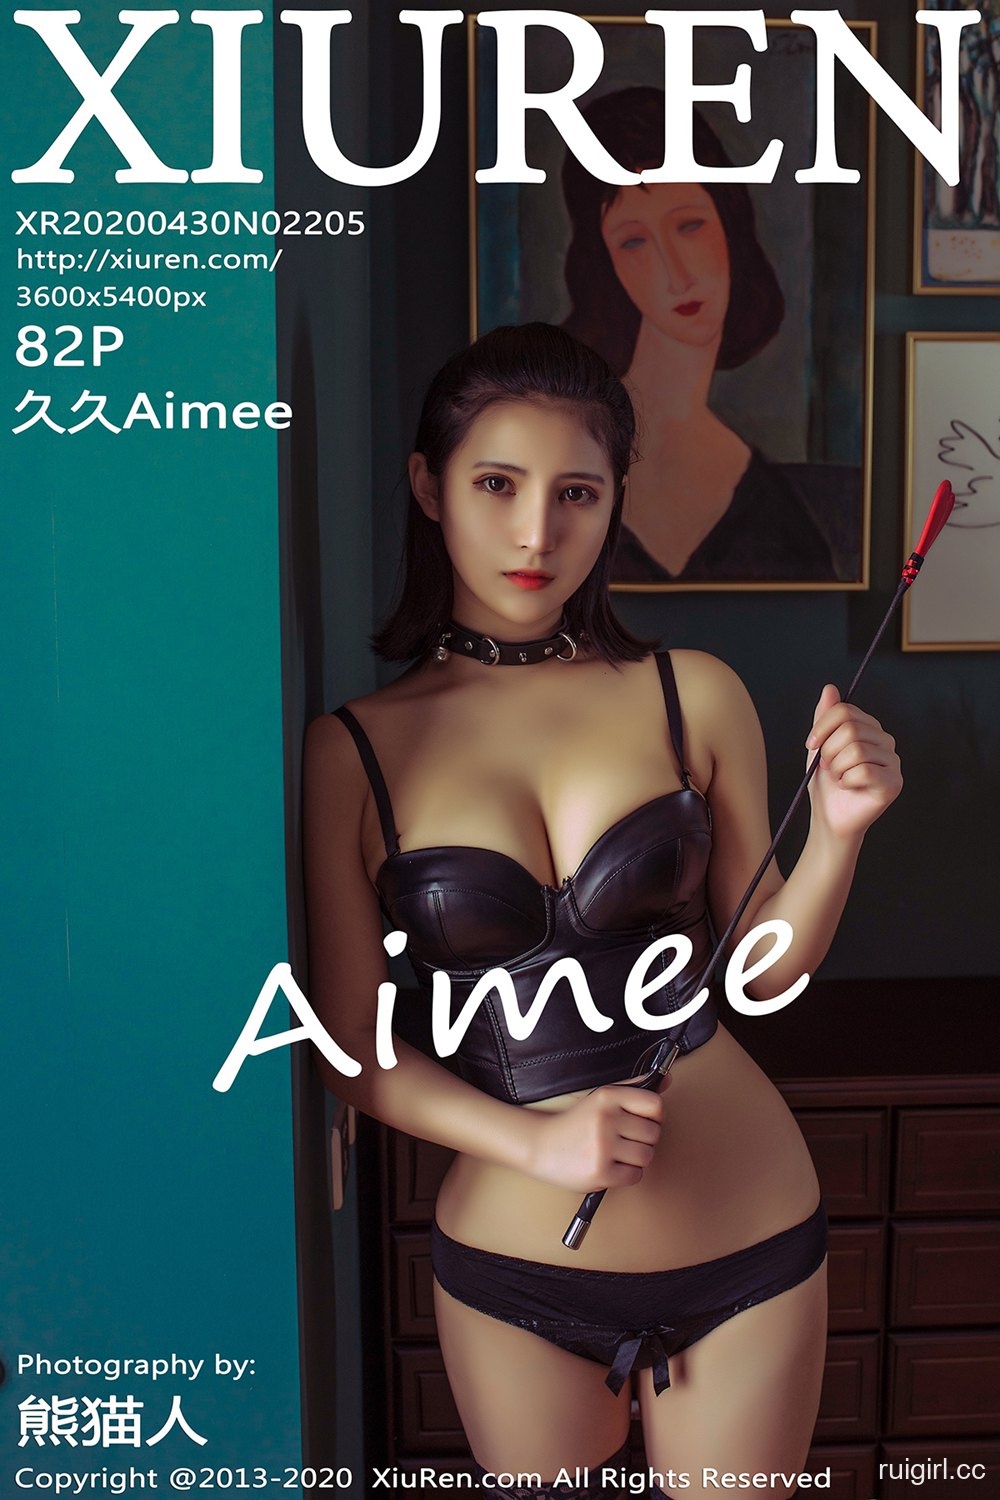 [XiuRen秀人网] 2020.04.30 No.2205 久久Aimee [82+1P]